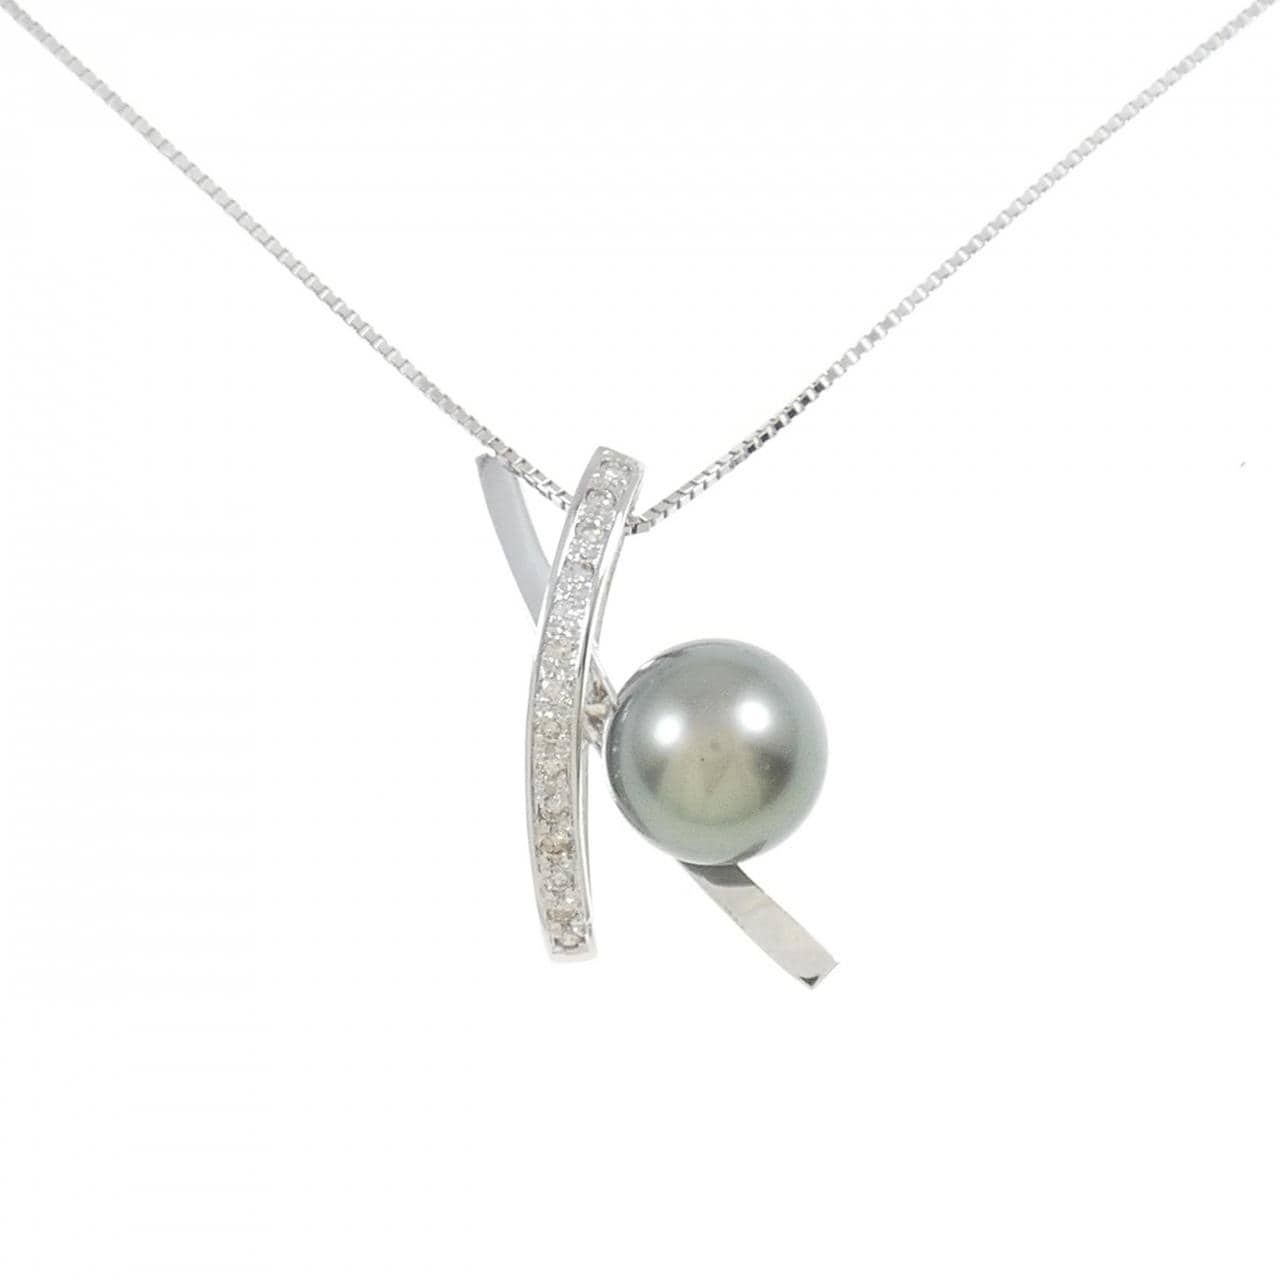 K18WG black butterfly pearl necklace 9.9mm